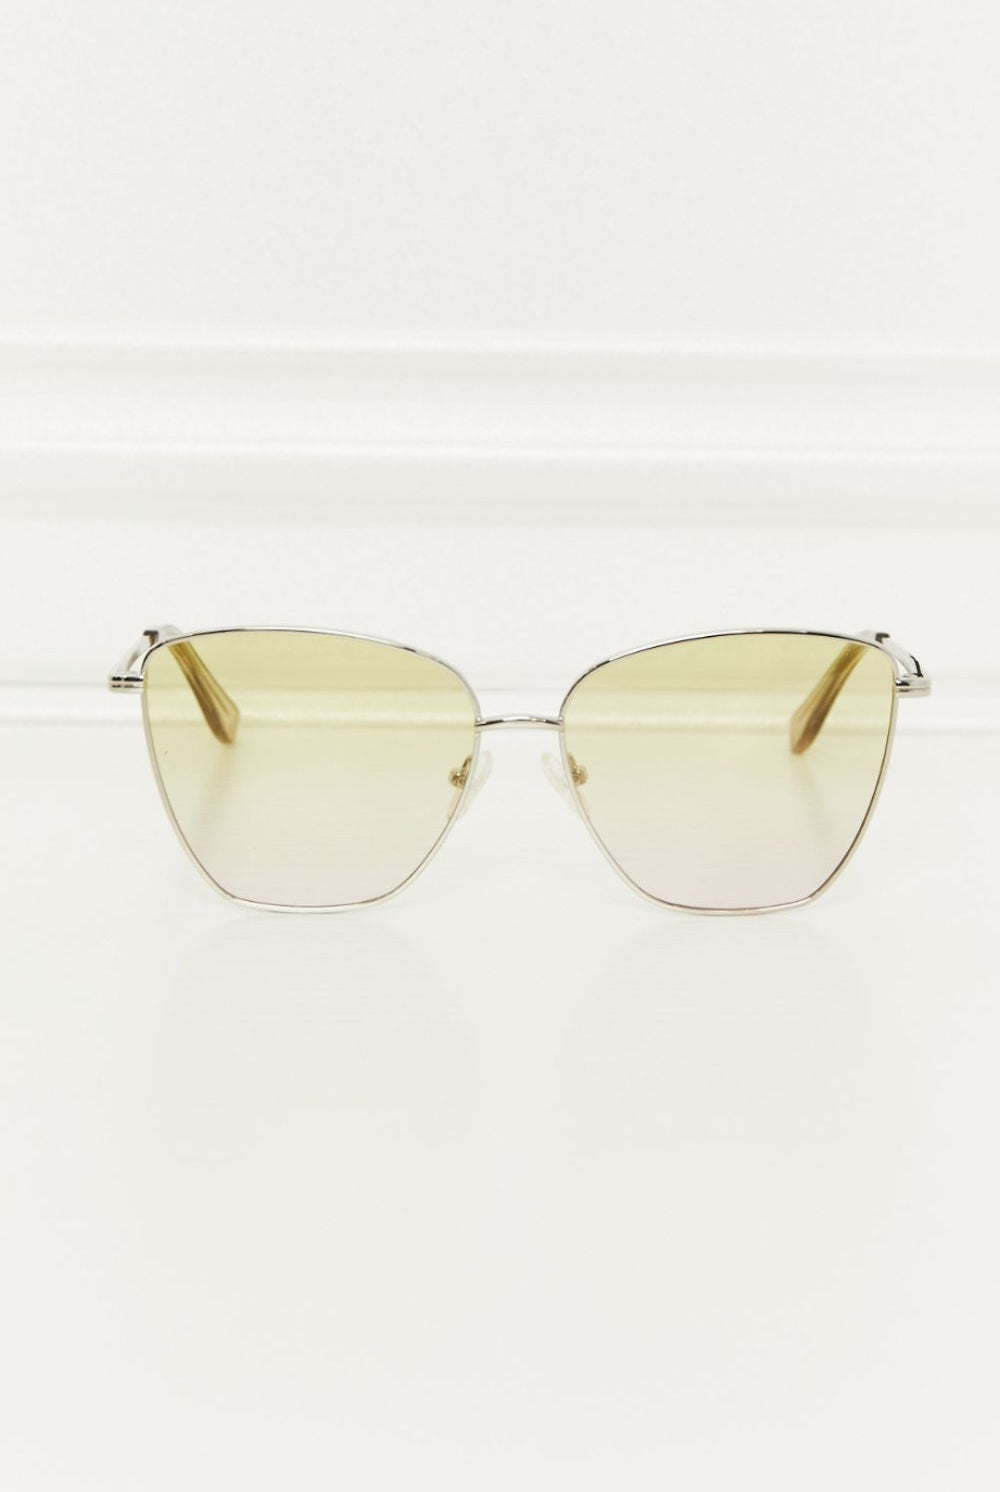 Beige Livin Metal Frame Full Rim Sunglasses Sunglasses